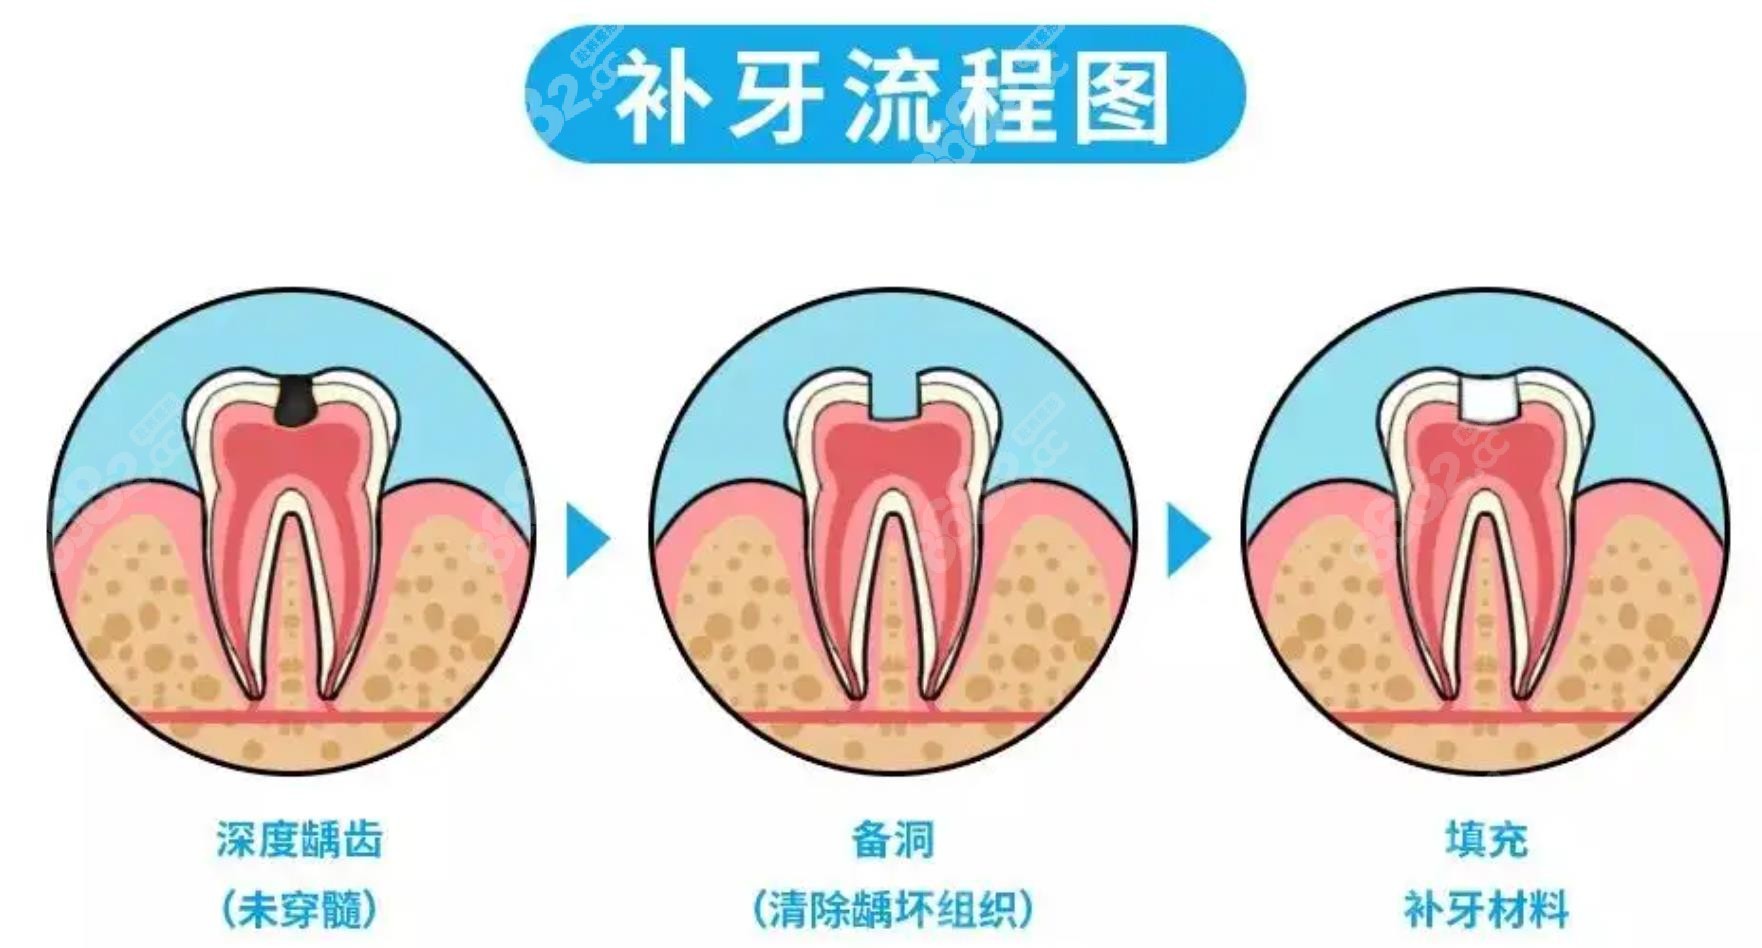 补牙&洗牙注意事项&价格…去过上海多家医院经验分享 - 知乎